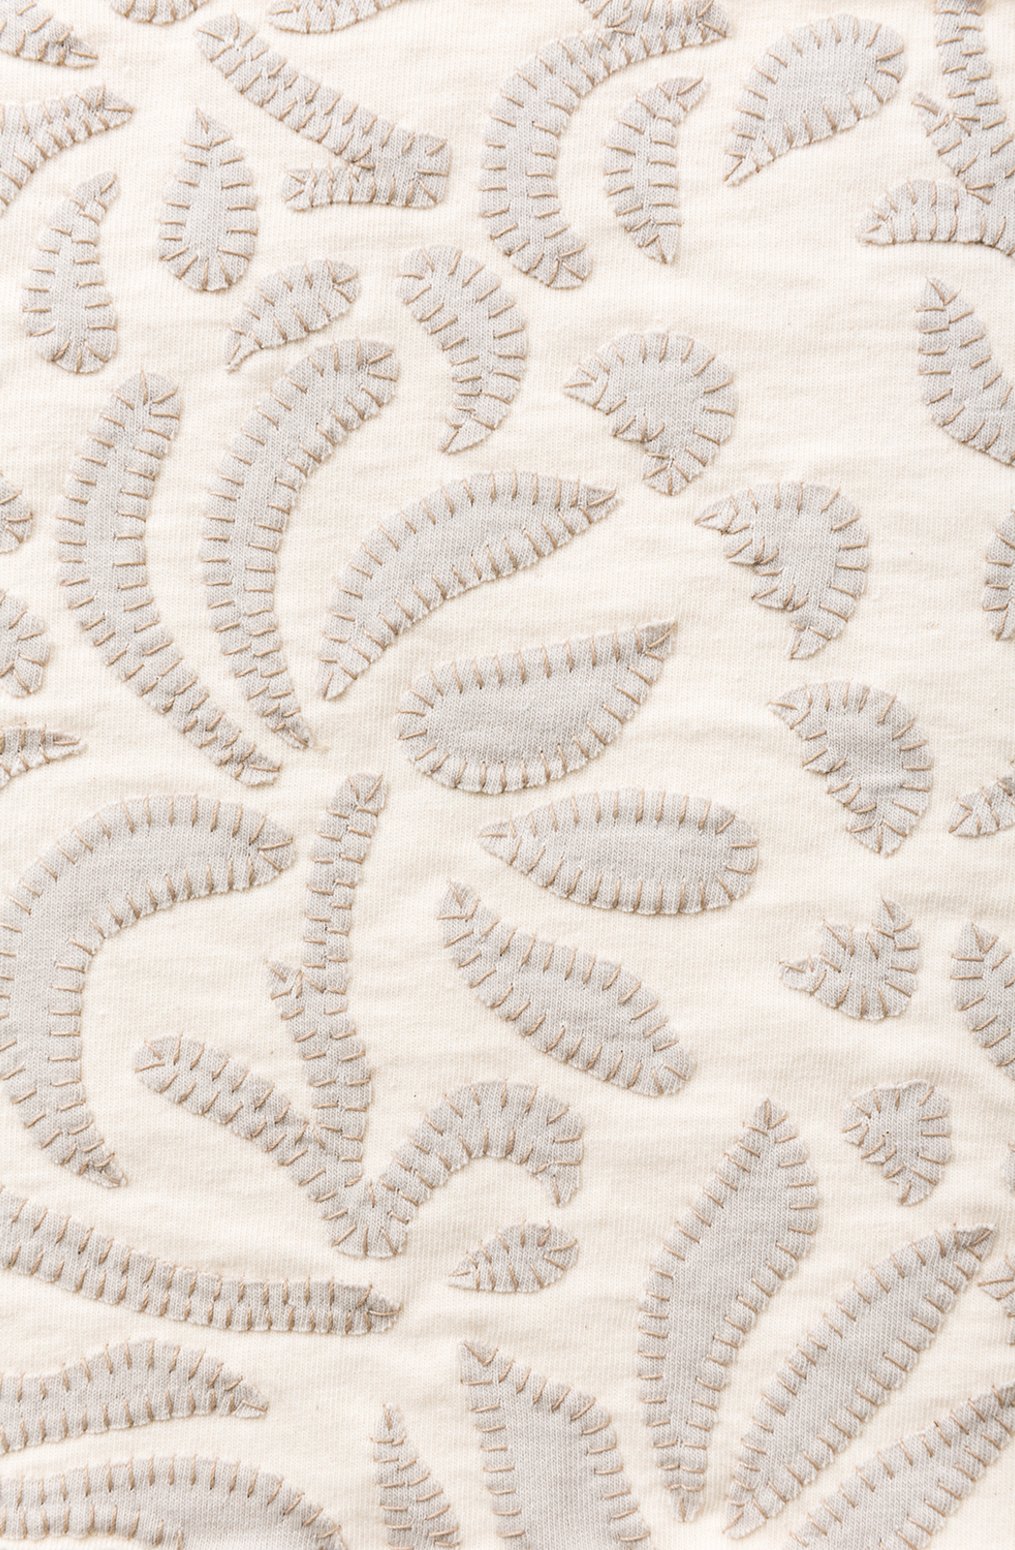 The School of making fabric swatch Anna's Garden Stencil in applique blanket stitch. 